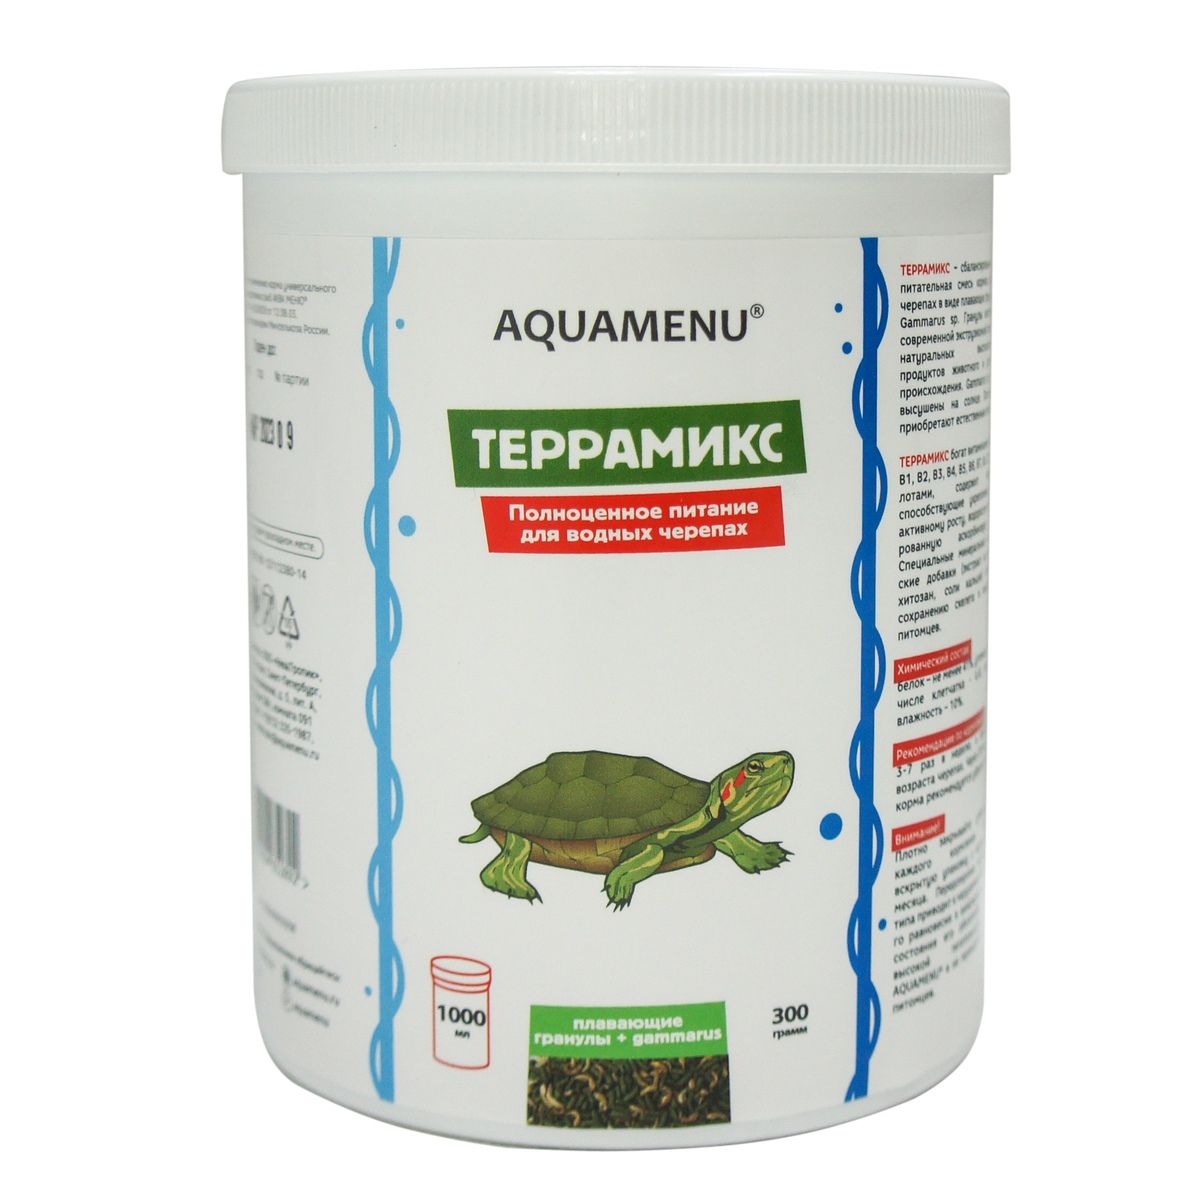 Aquamenu, Террамикс. Полноценное питание для водных черепах. Аква